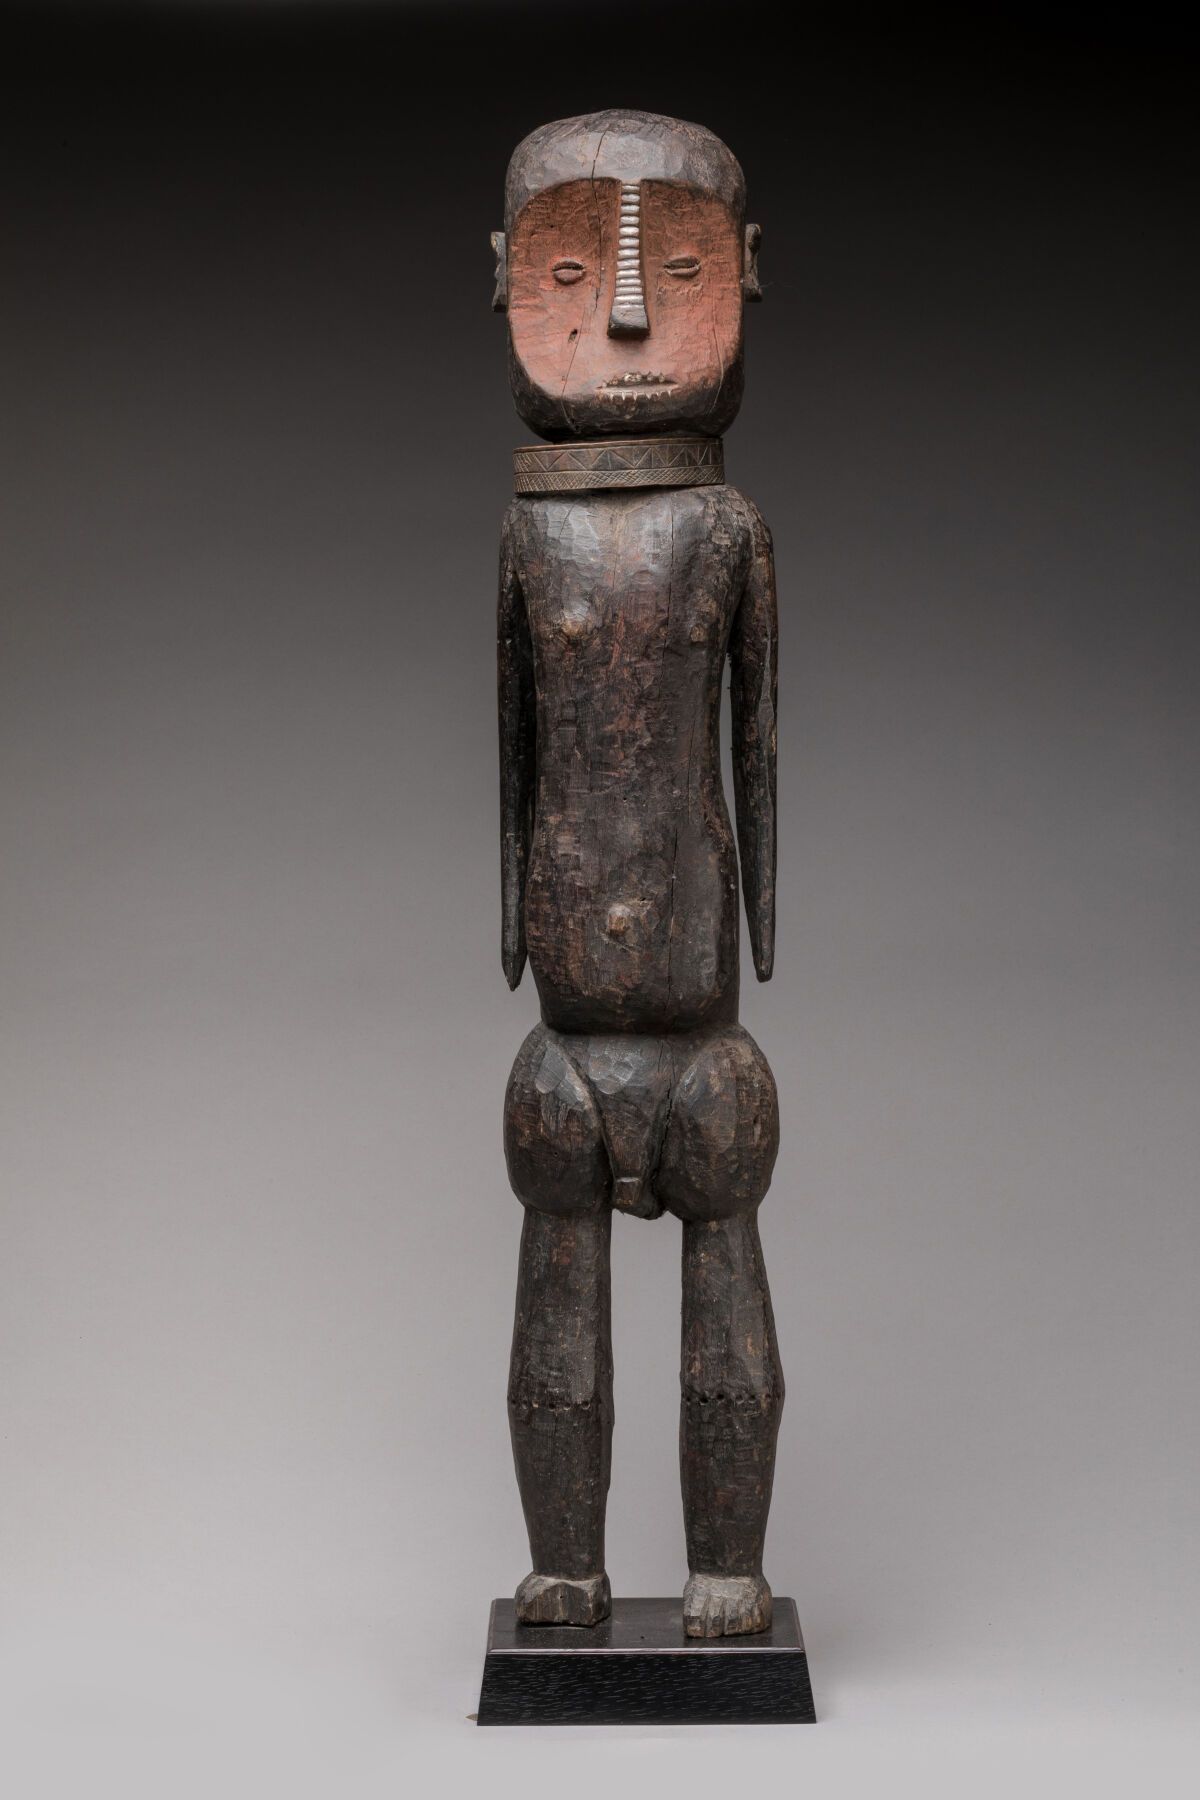 Null NGBAKA-MINAGENDE, 刚果民主共和国。
木头，多色天然颜料，扭矩，牛角石
雕像呈现的是一个站立的人物，身体有造型，手臂沿着身体，脖子上有&hellip;